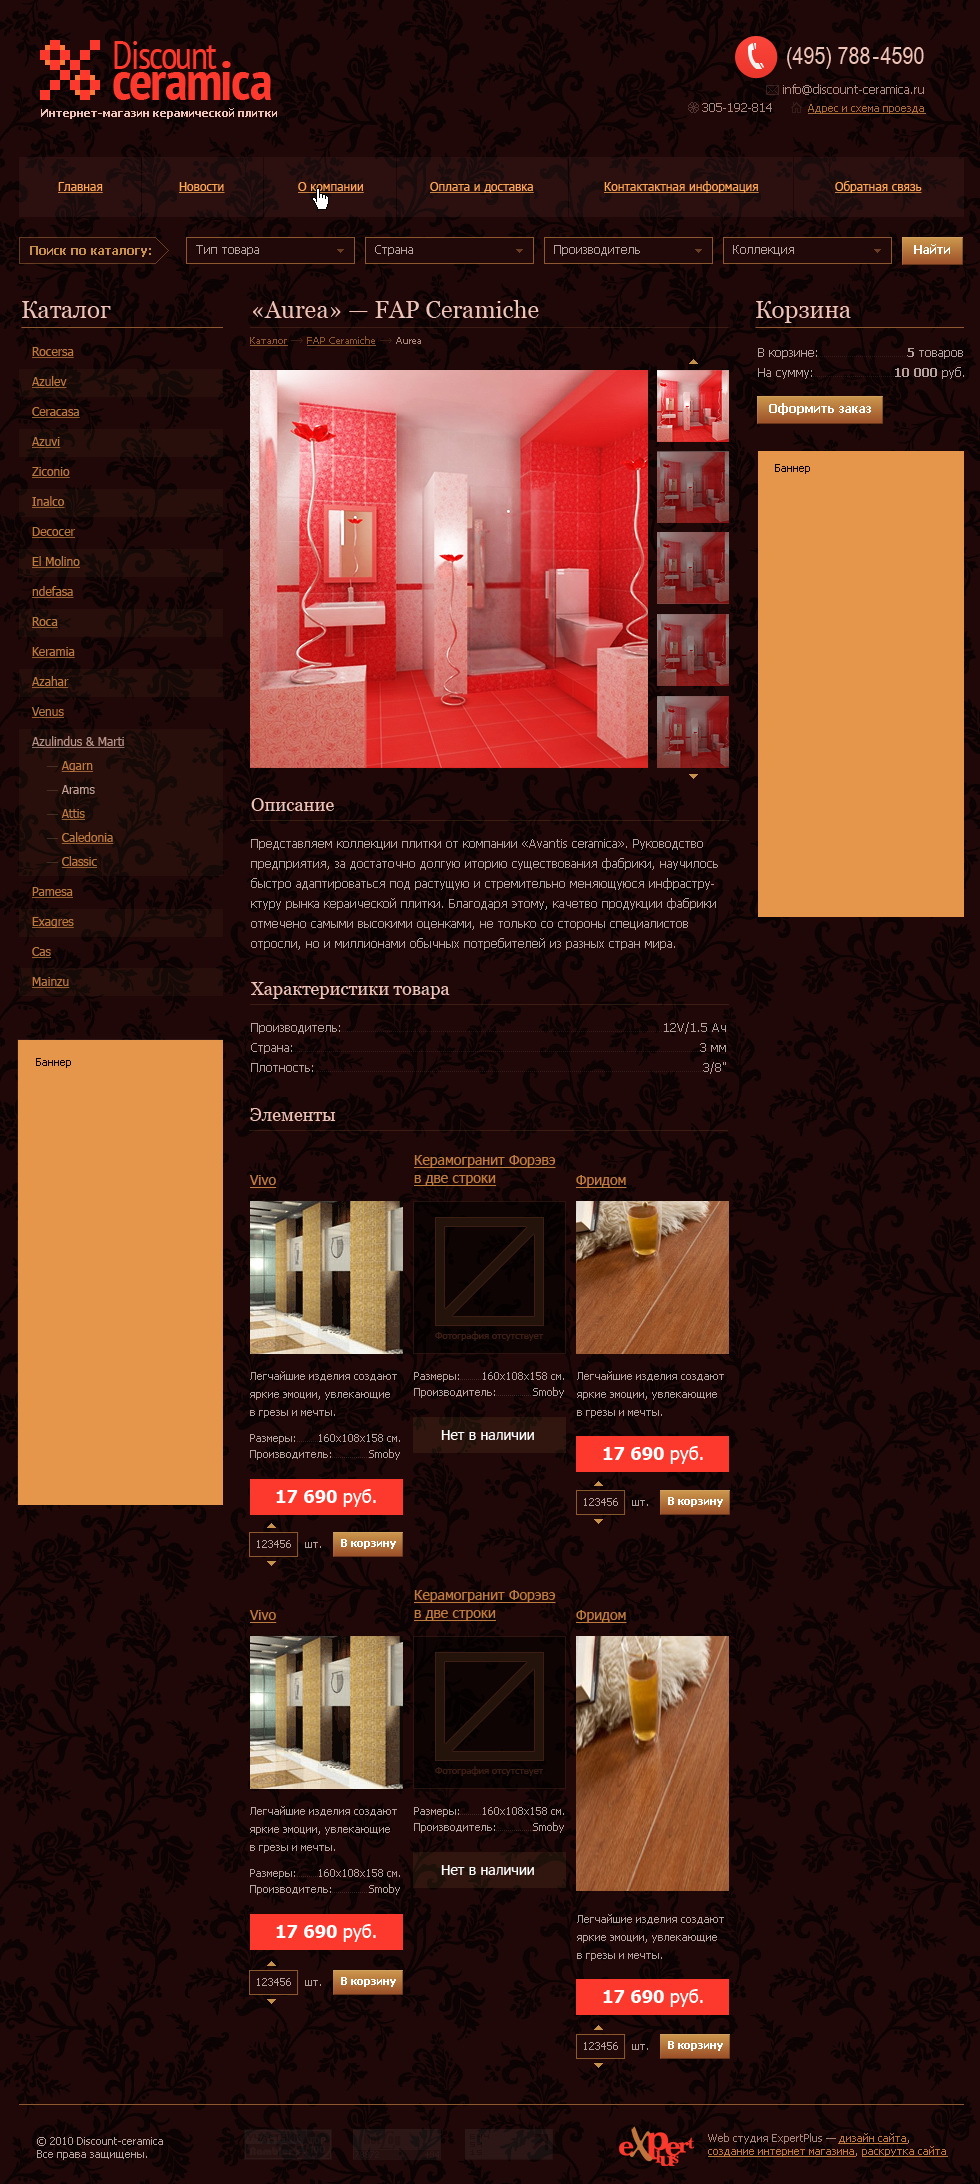 Интернет-магазин керамической плитки "Discount Ceramica"